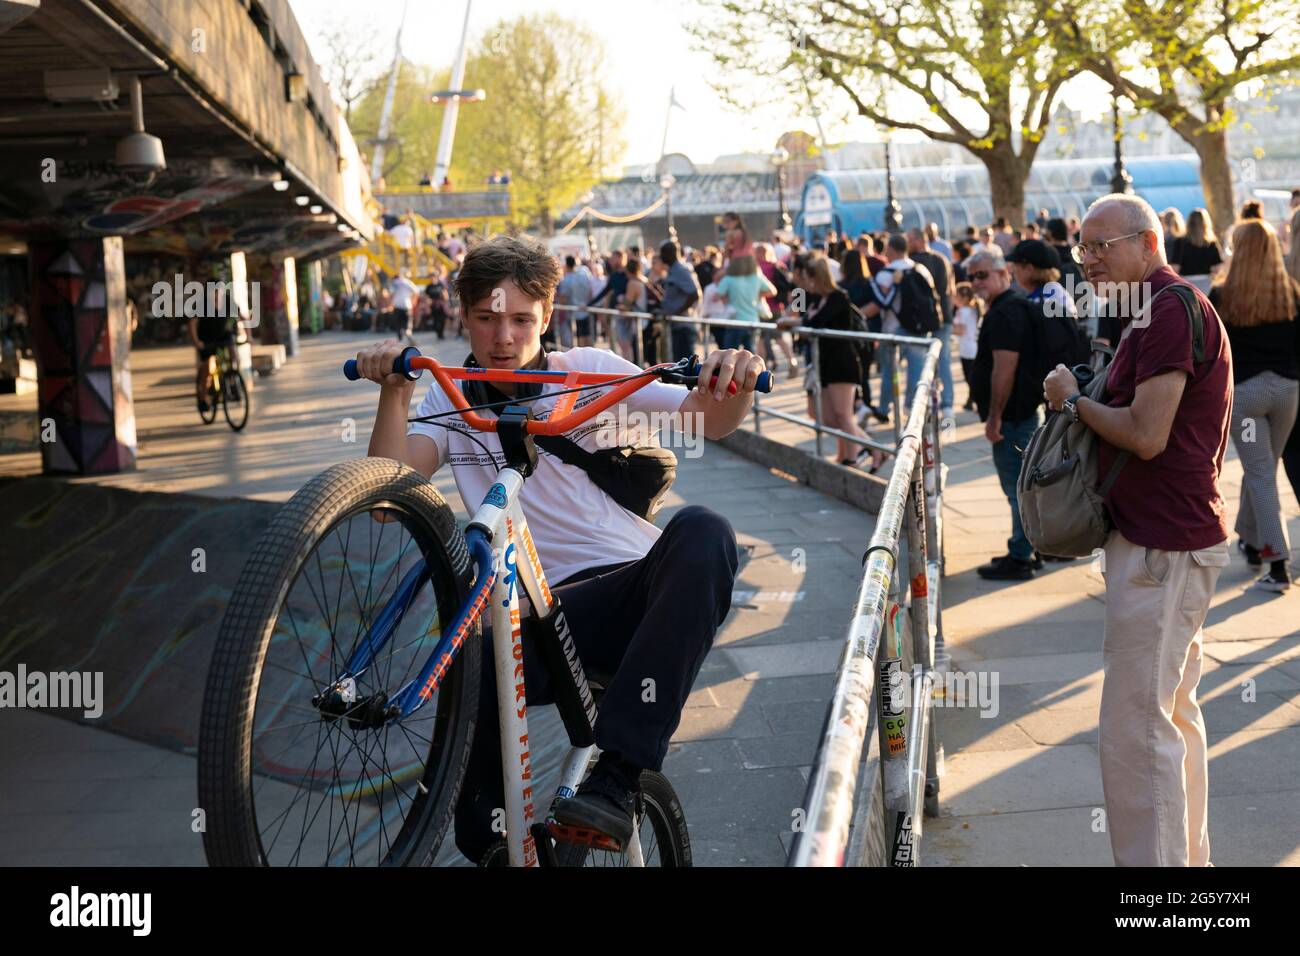 Ragazzi che fanno acrobazie sulle biciclette mentre i turisti guardano al Southbank Skate Space di Londra, Regno Unito Foto Stock